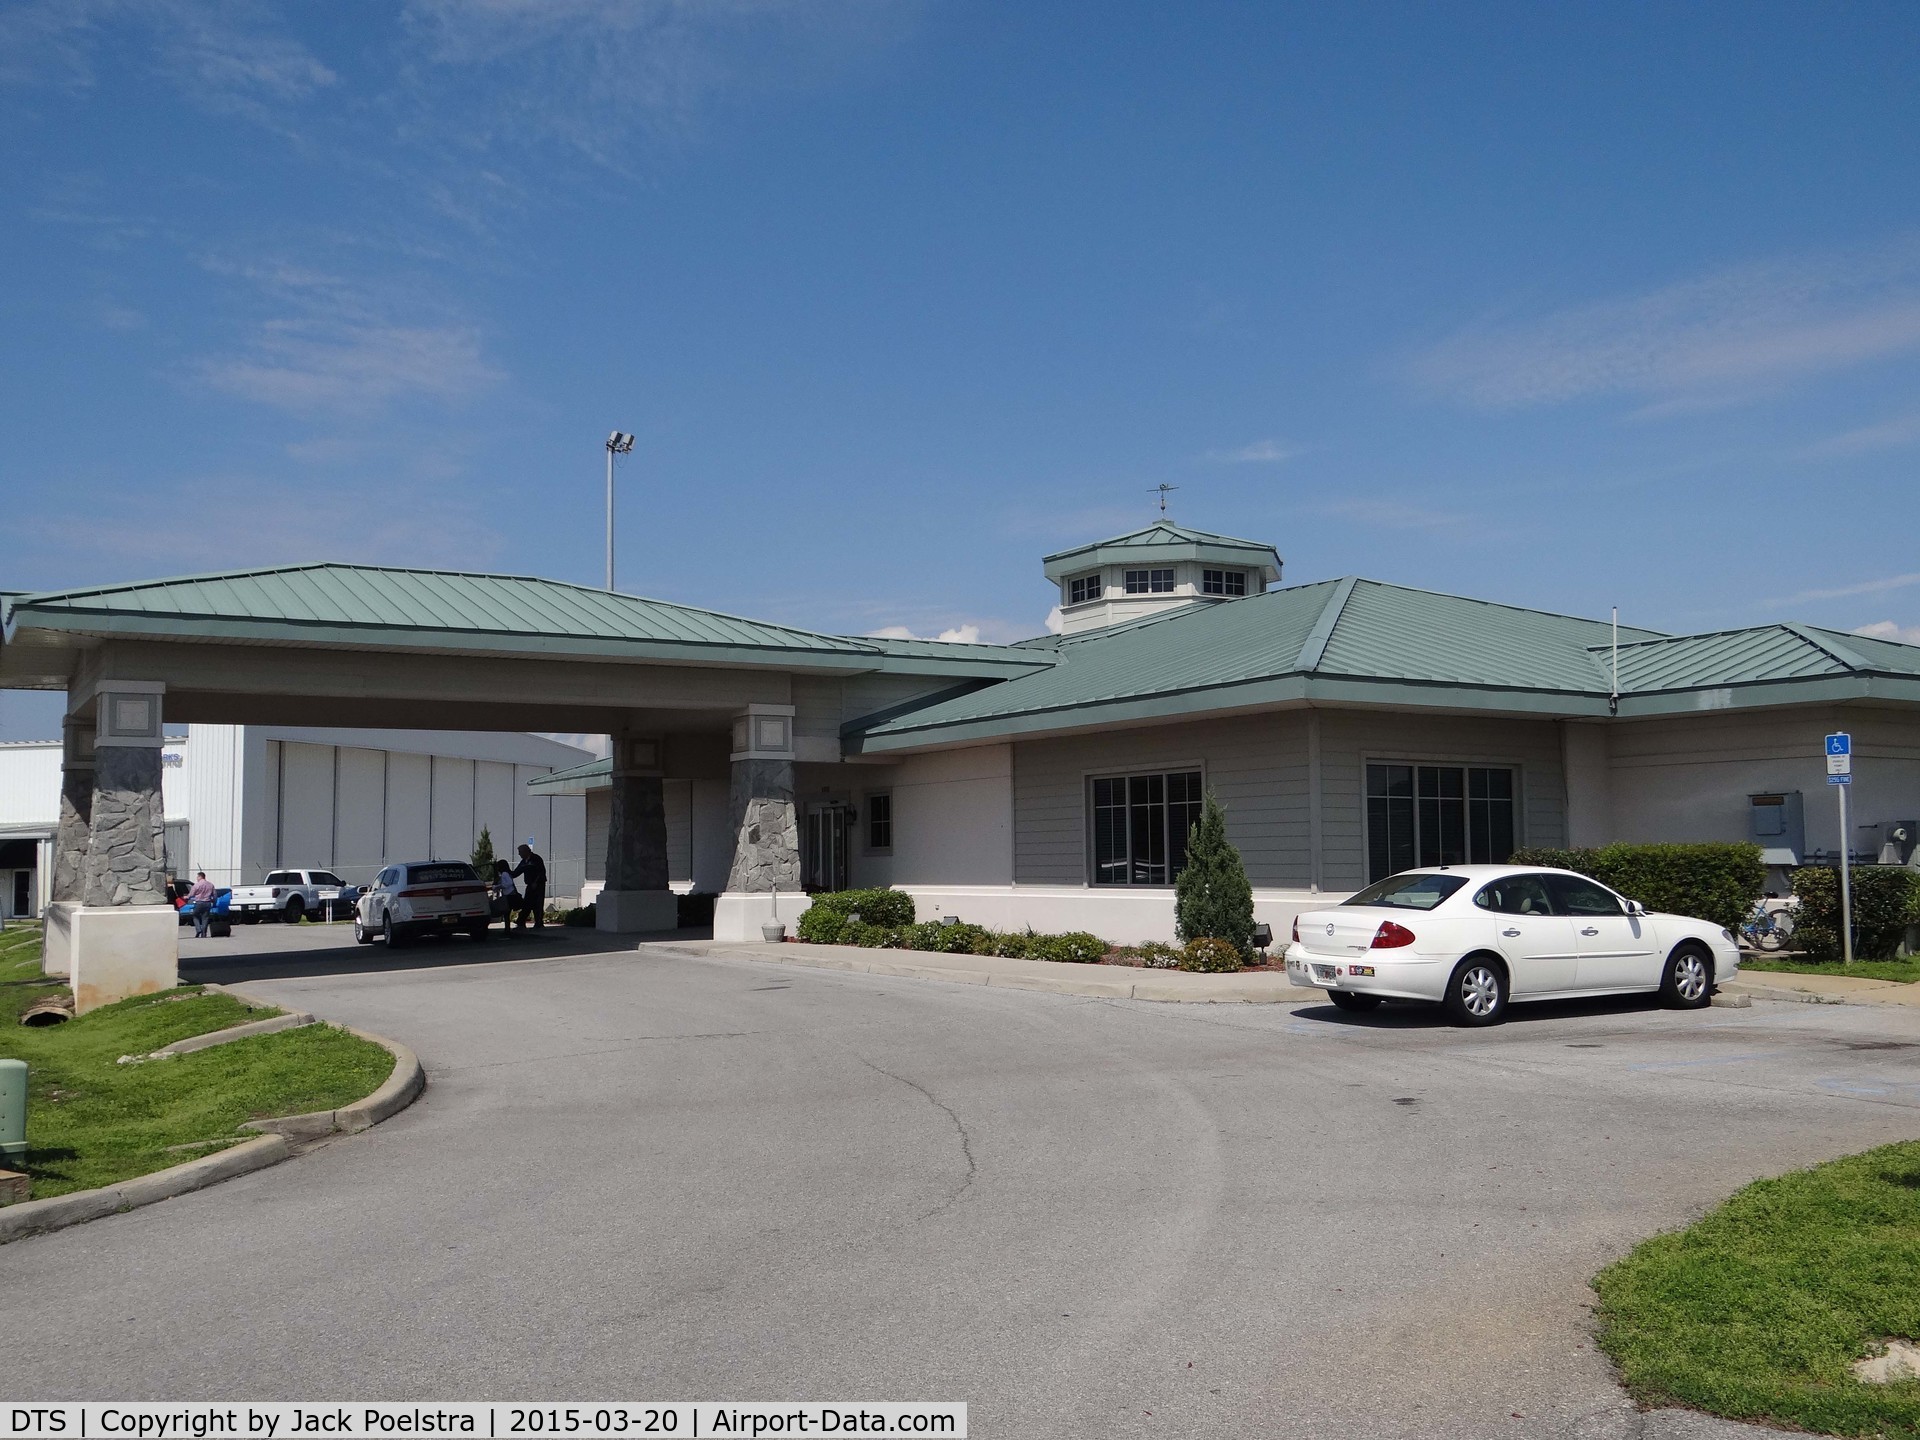 Destin-fort Walton Beach Airport (DTS) - Passenger terminal of Destin-Fort Walton beach airport Fla.